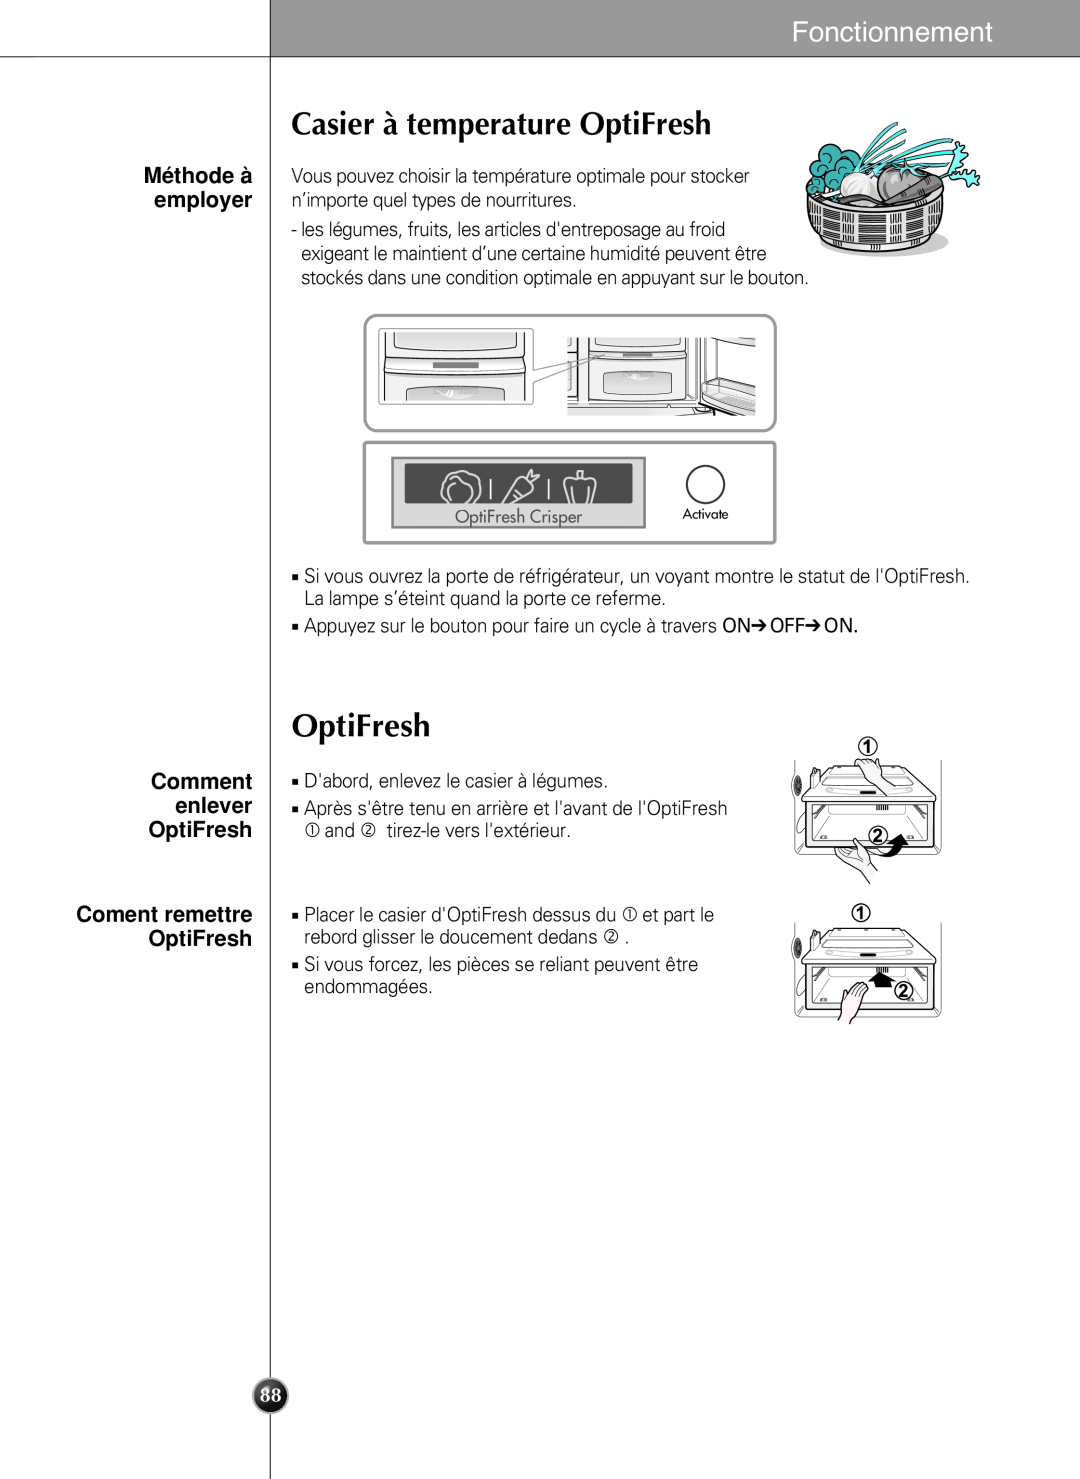 LG Electronics LSC27990TT manual Casier à temperature OptiFresh, Comment enlever OptiFresh, Fonctionnement 